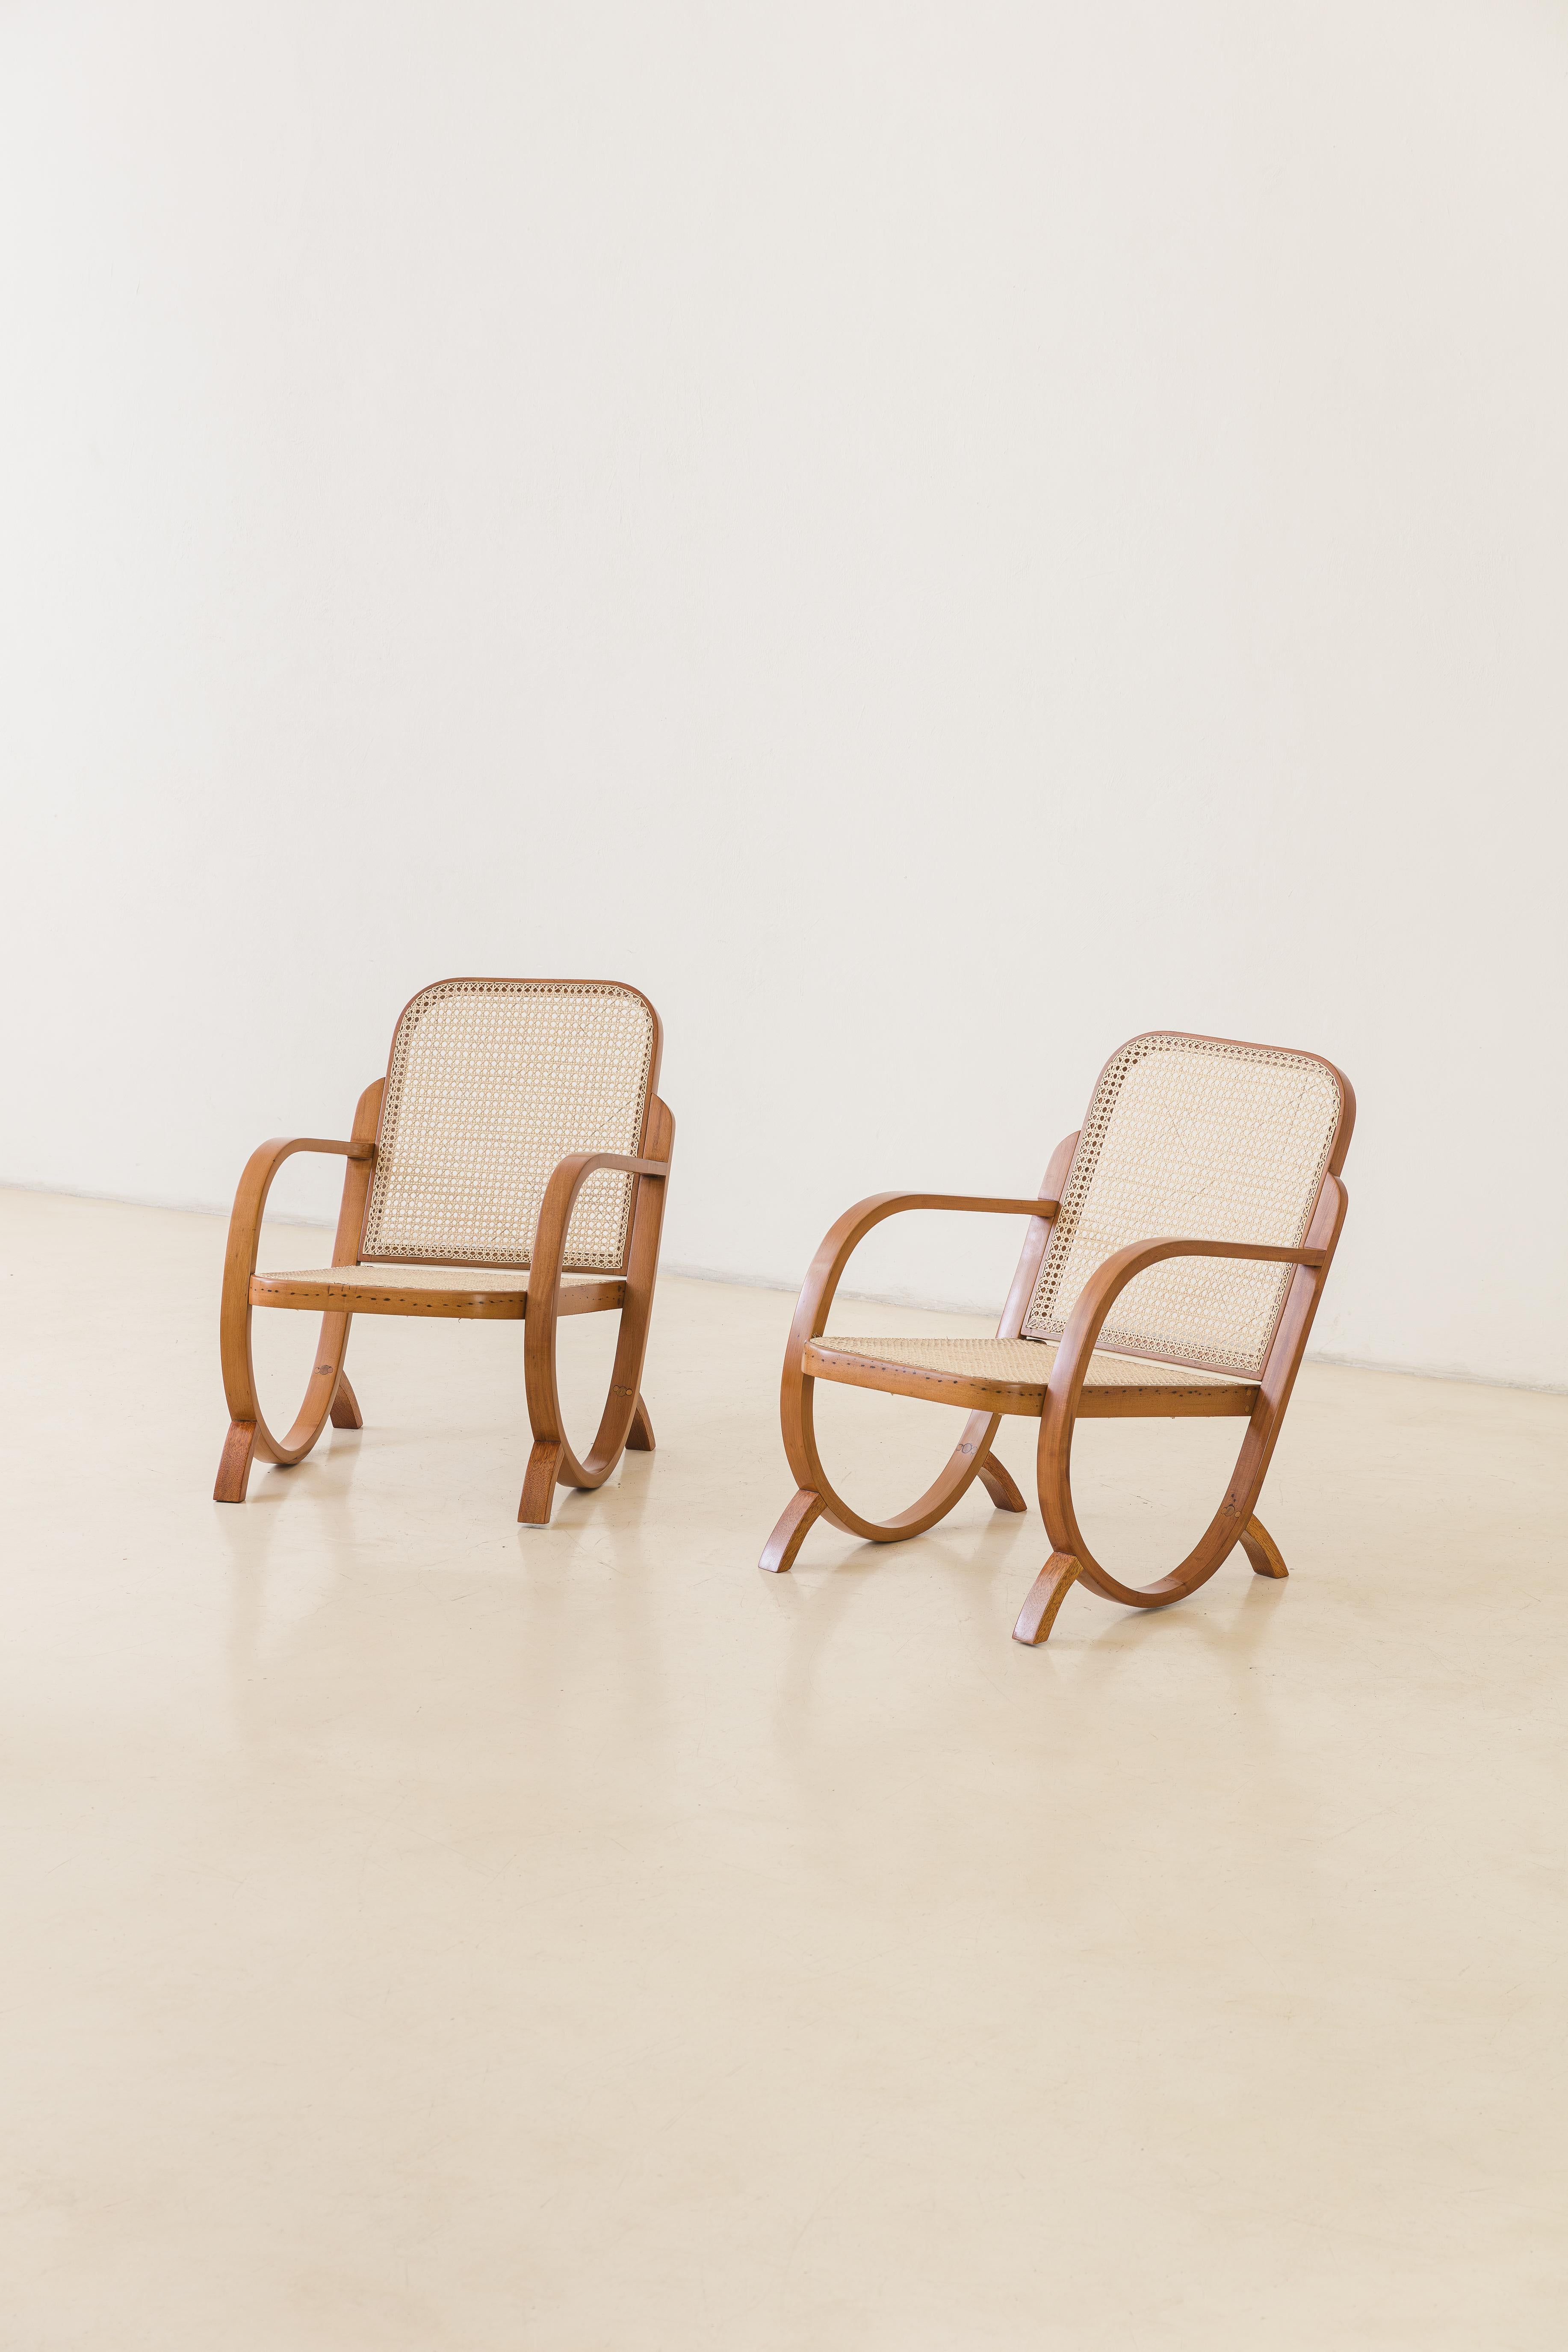 Dieses Sesselpaar wurde in den 1930er Jahren von der brasilianischen Firma Móveis Gerdau hergestellt. Die restaurierten Stücke wurden aus gebogenem Holz und Kunststoffrohr hergestellt, das eine optimale Belüftung für Möbel in tropischem Klima